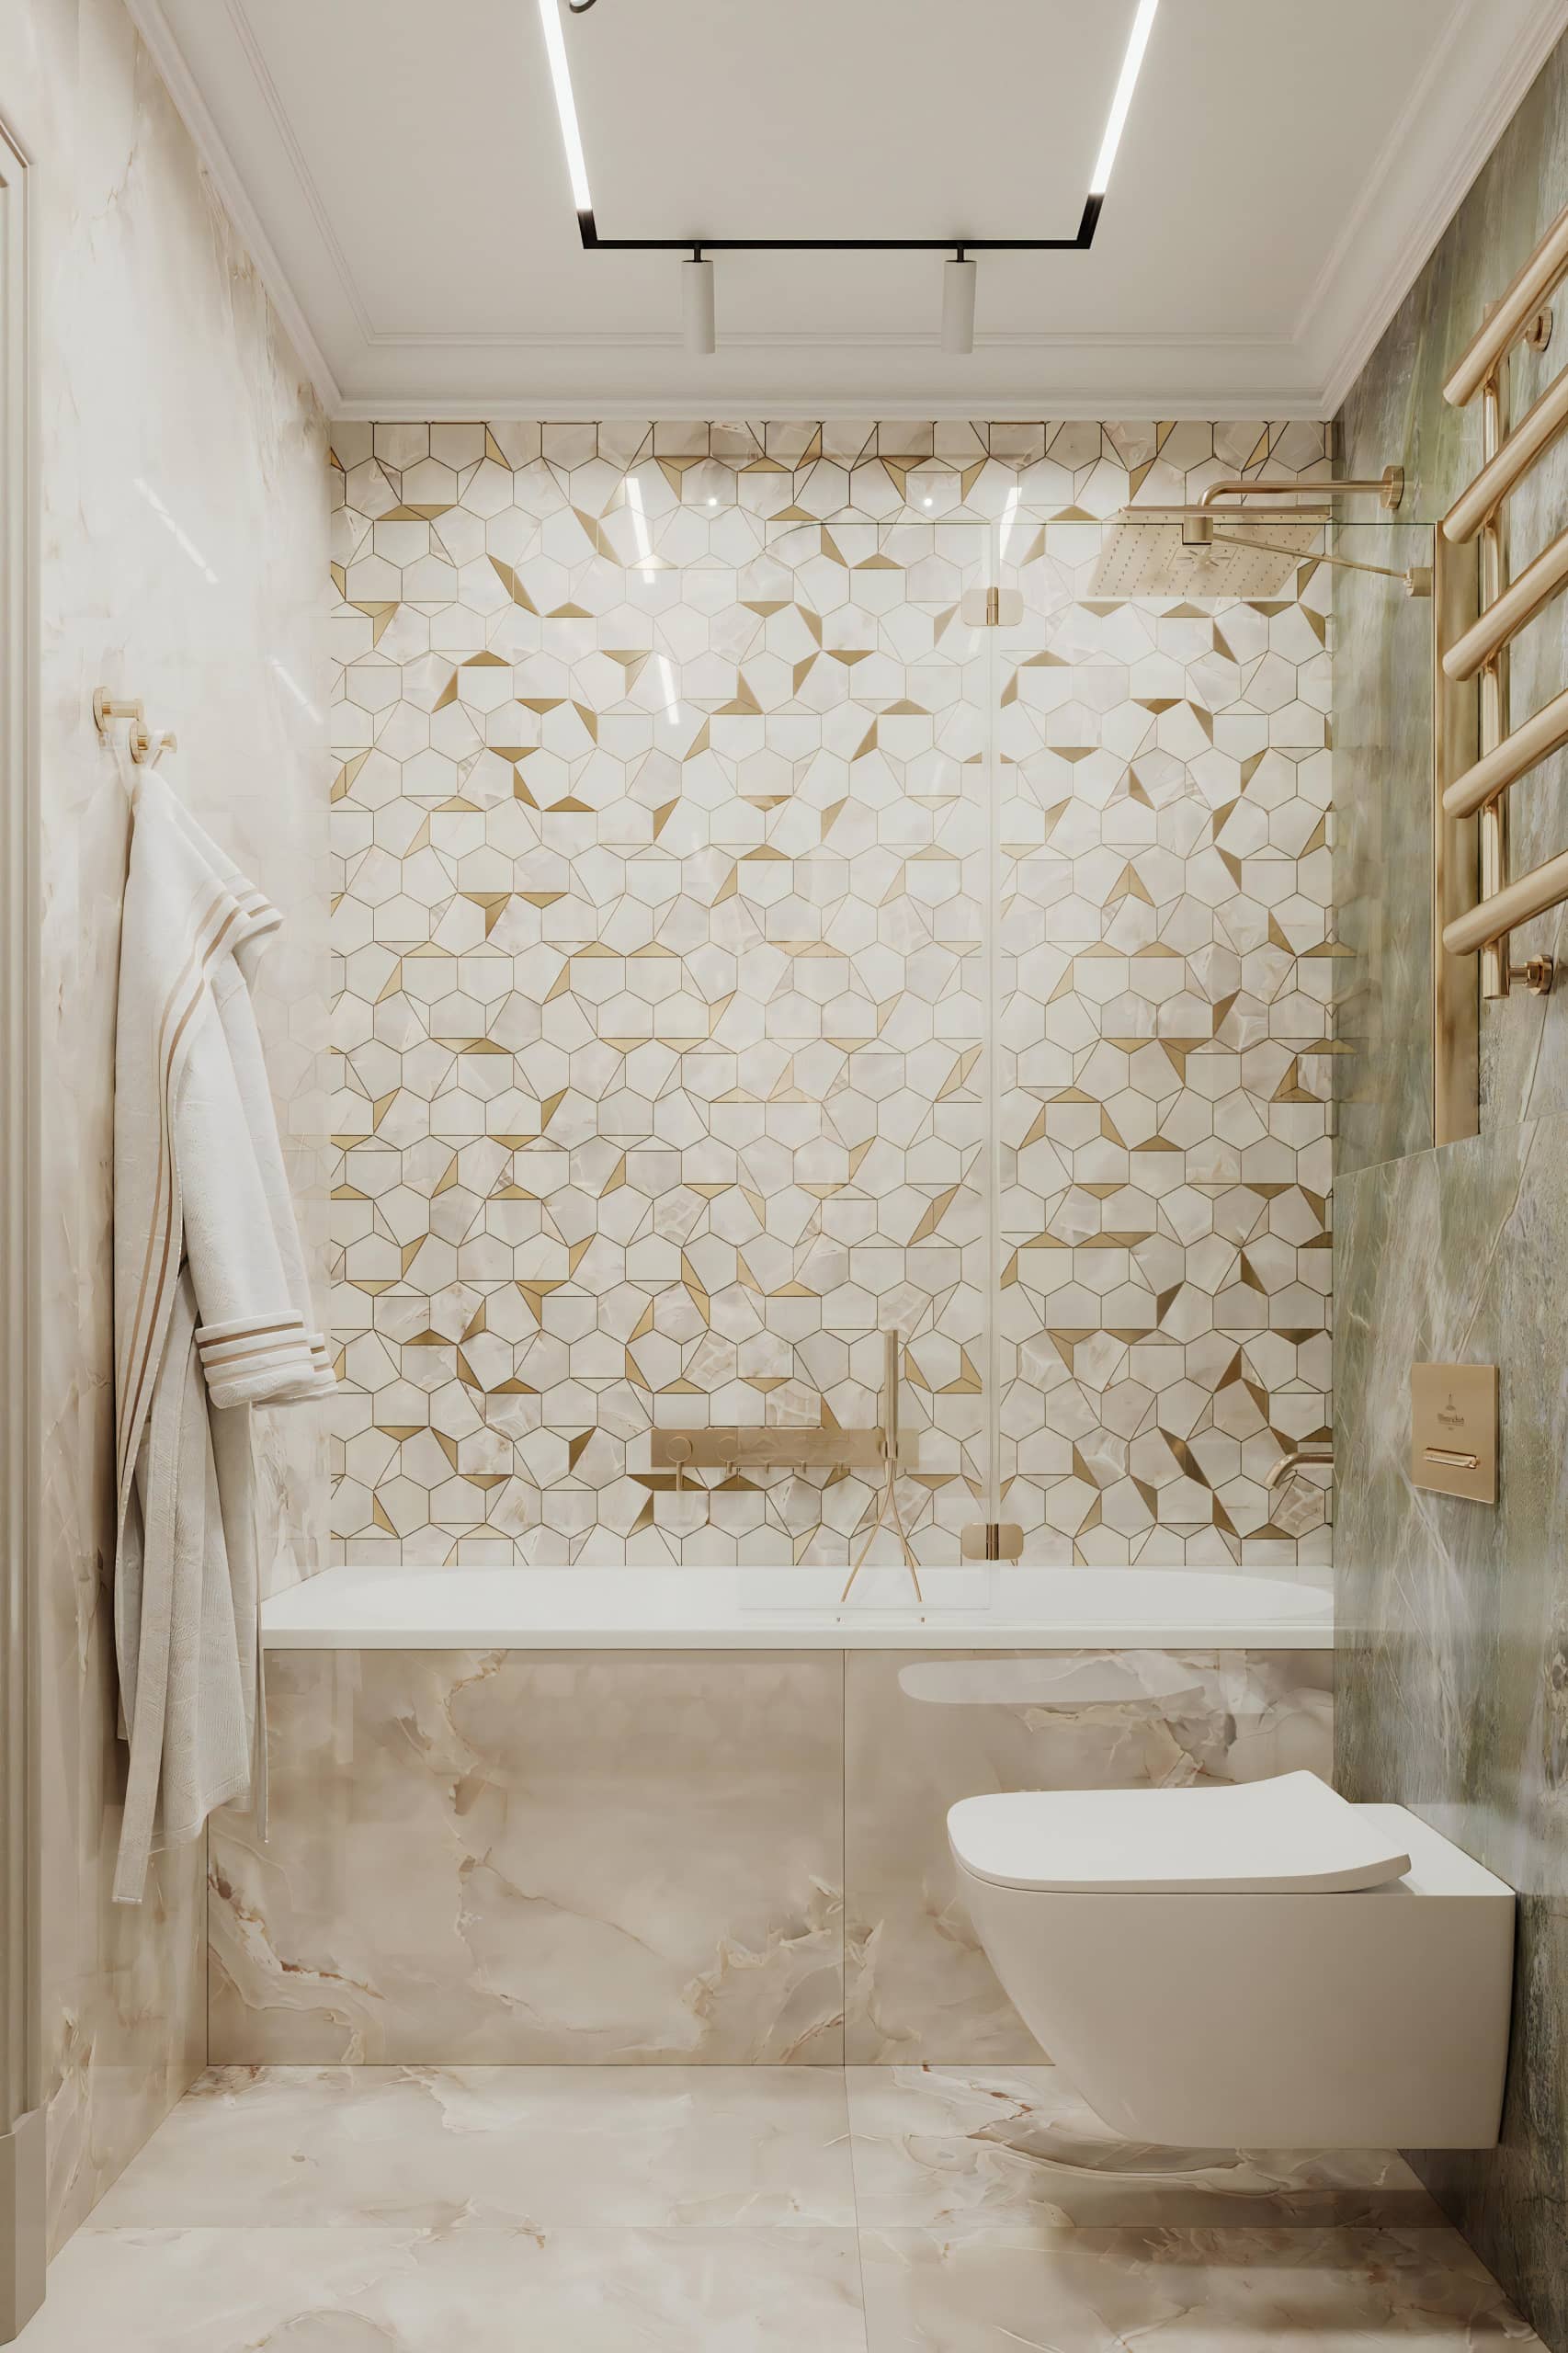 Оформление интерьера ванной комнаты в белый цвет. Фото № 71427.